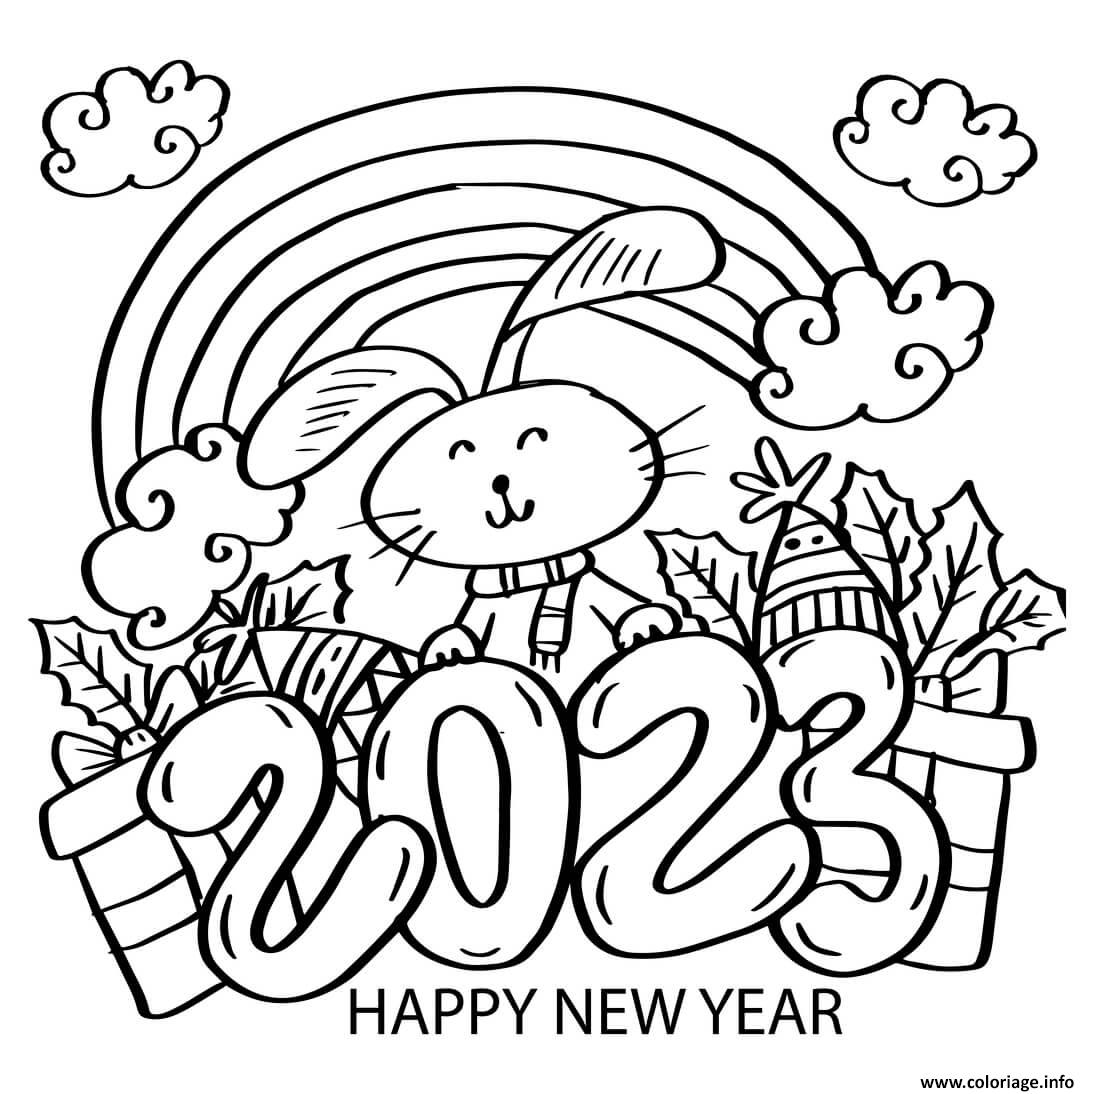 Coloriage 2023 Nouvel An Lapin Arc En Ciel Dessin Bonne Annee Nouvel An